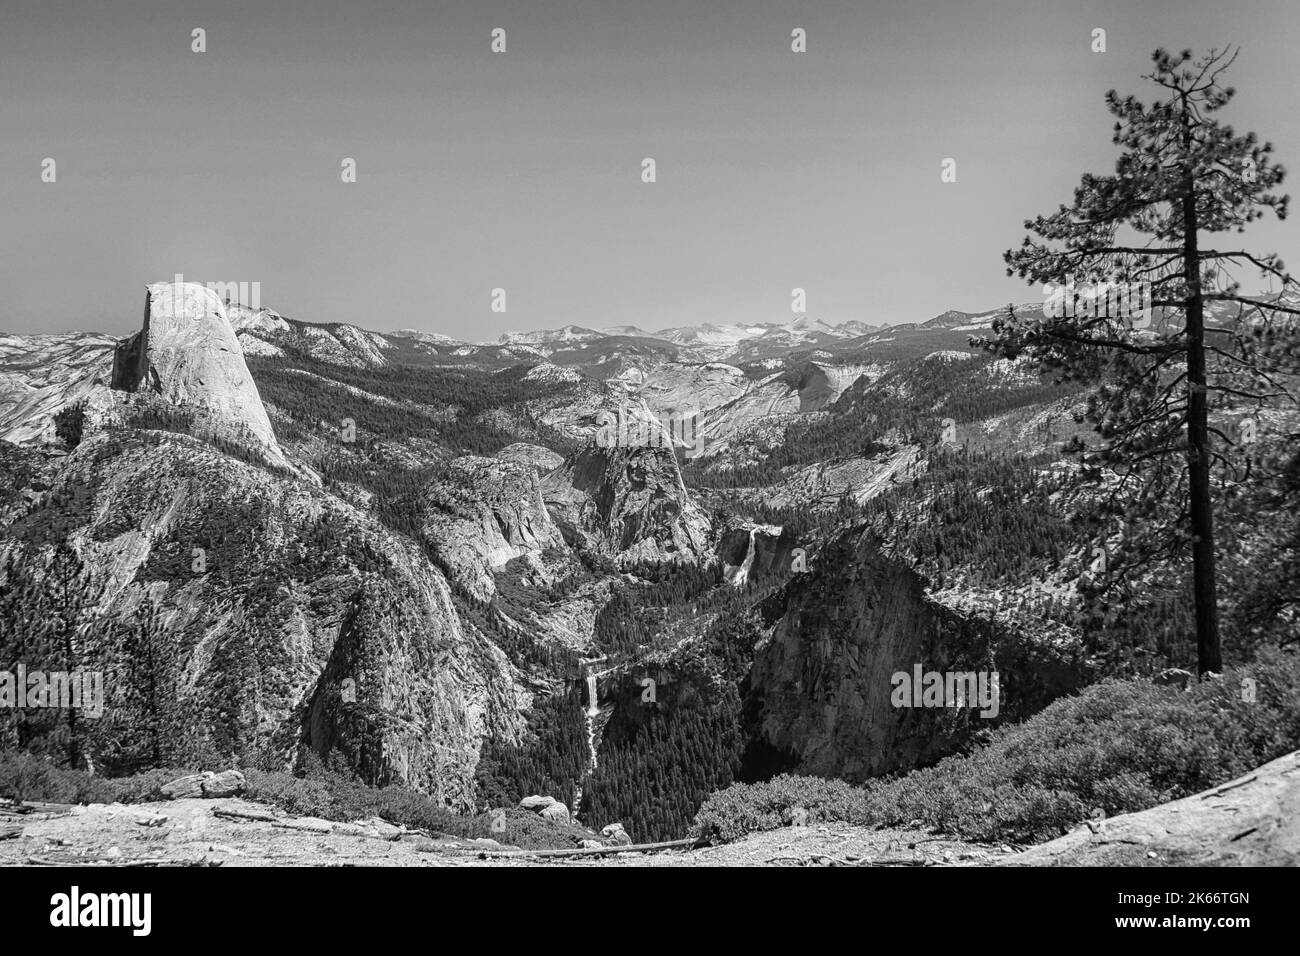 Half Dome et Nevada Falls, Yosemite Valley, parc national Yosemite, Sierra Nevada, Californie du Nord, ÉTATS-UNIS EN NOIR ET BLANC Banque D'Images